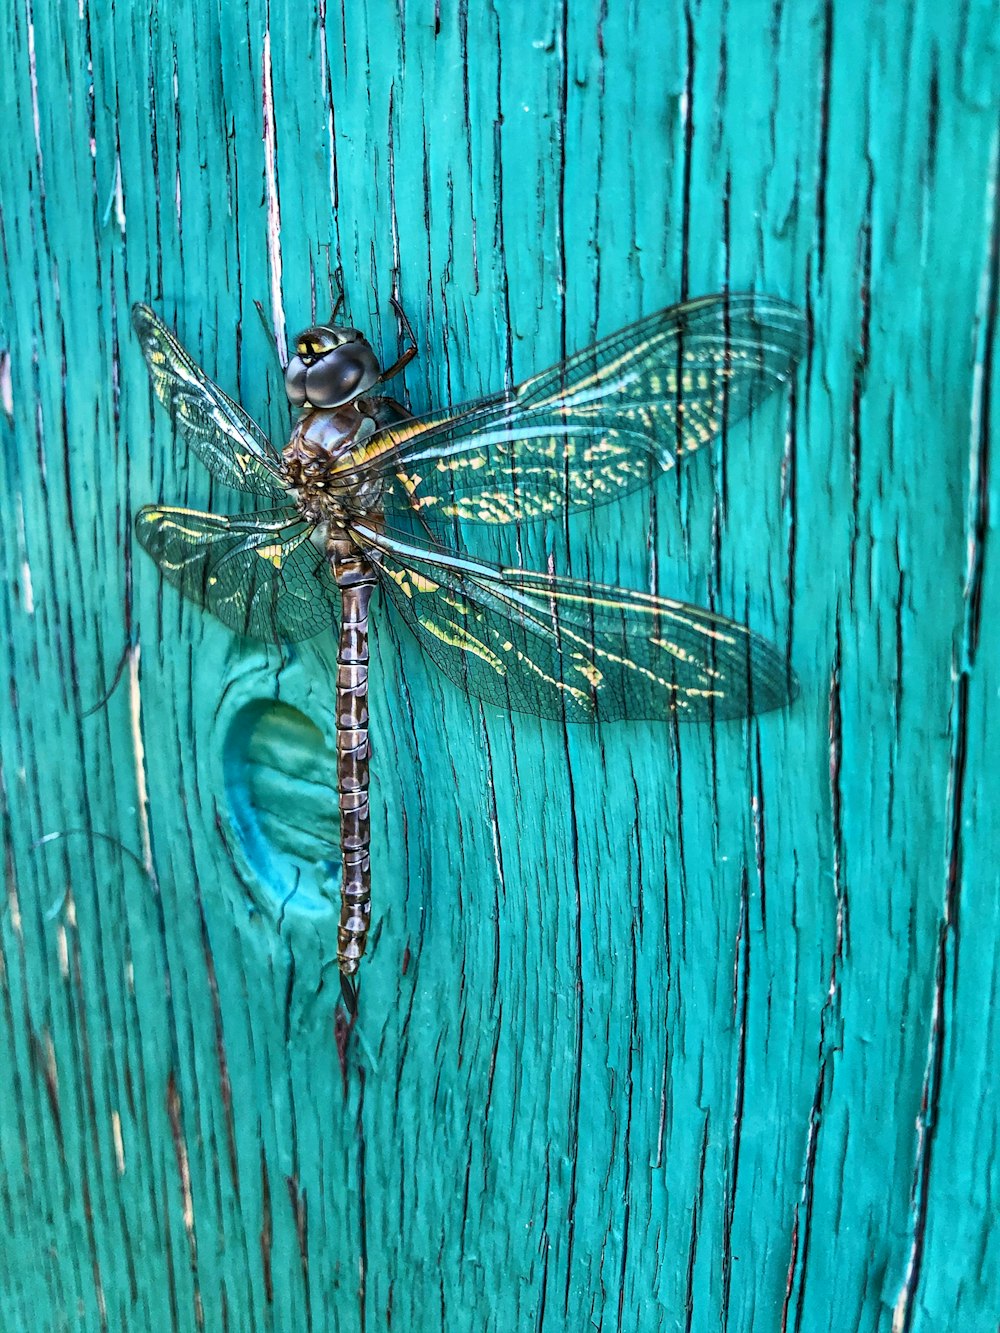 une libellule assise sur une surface en bois